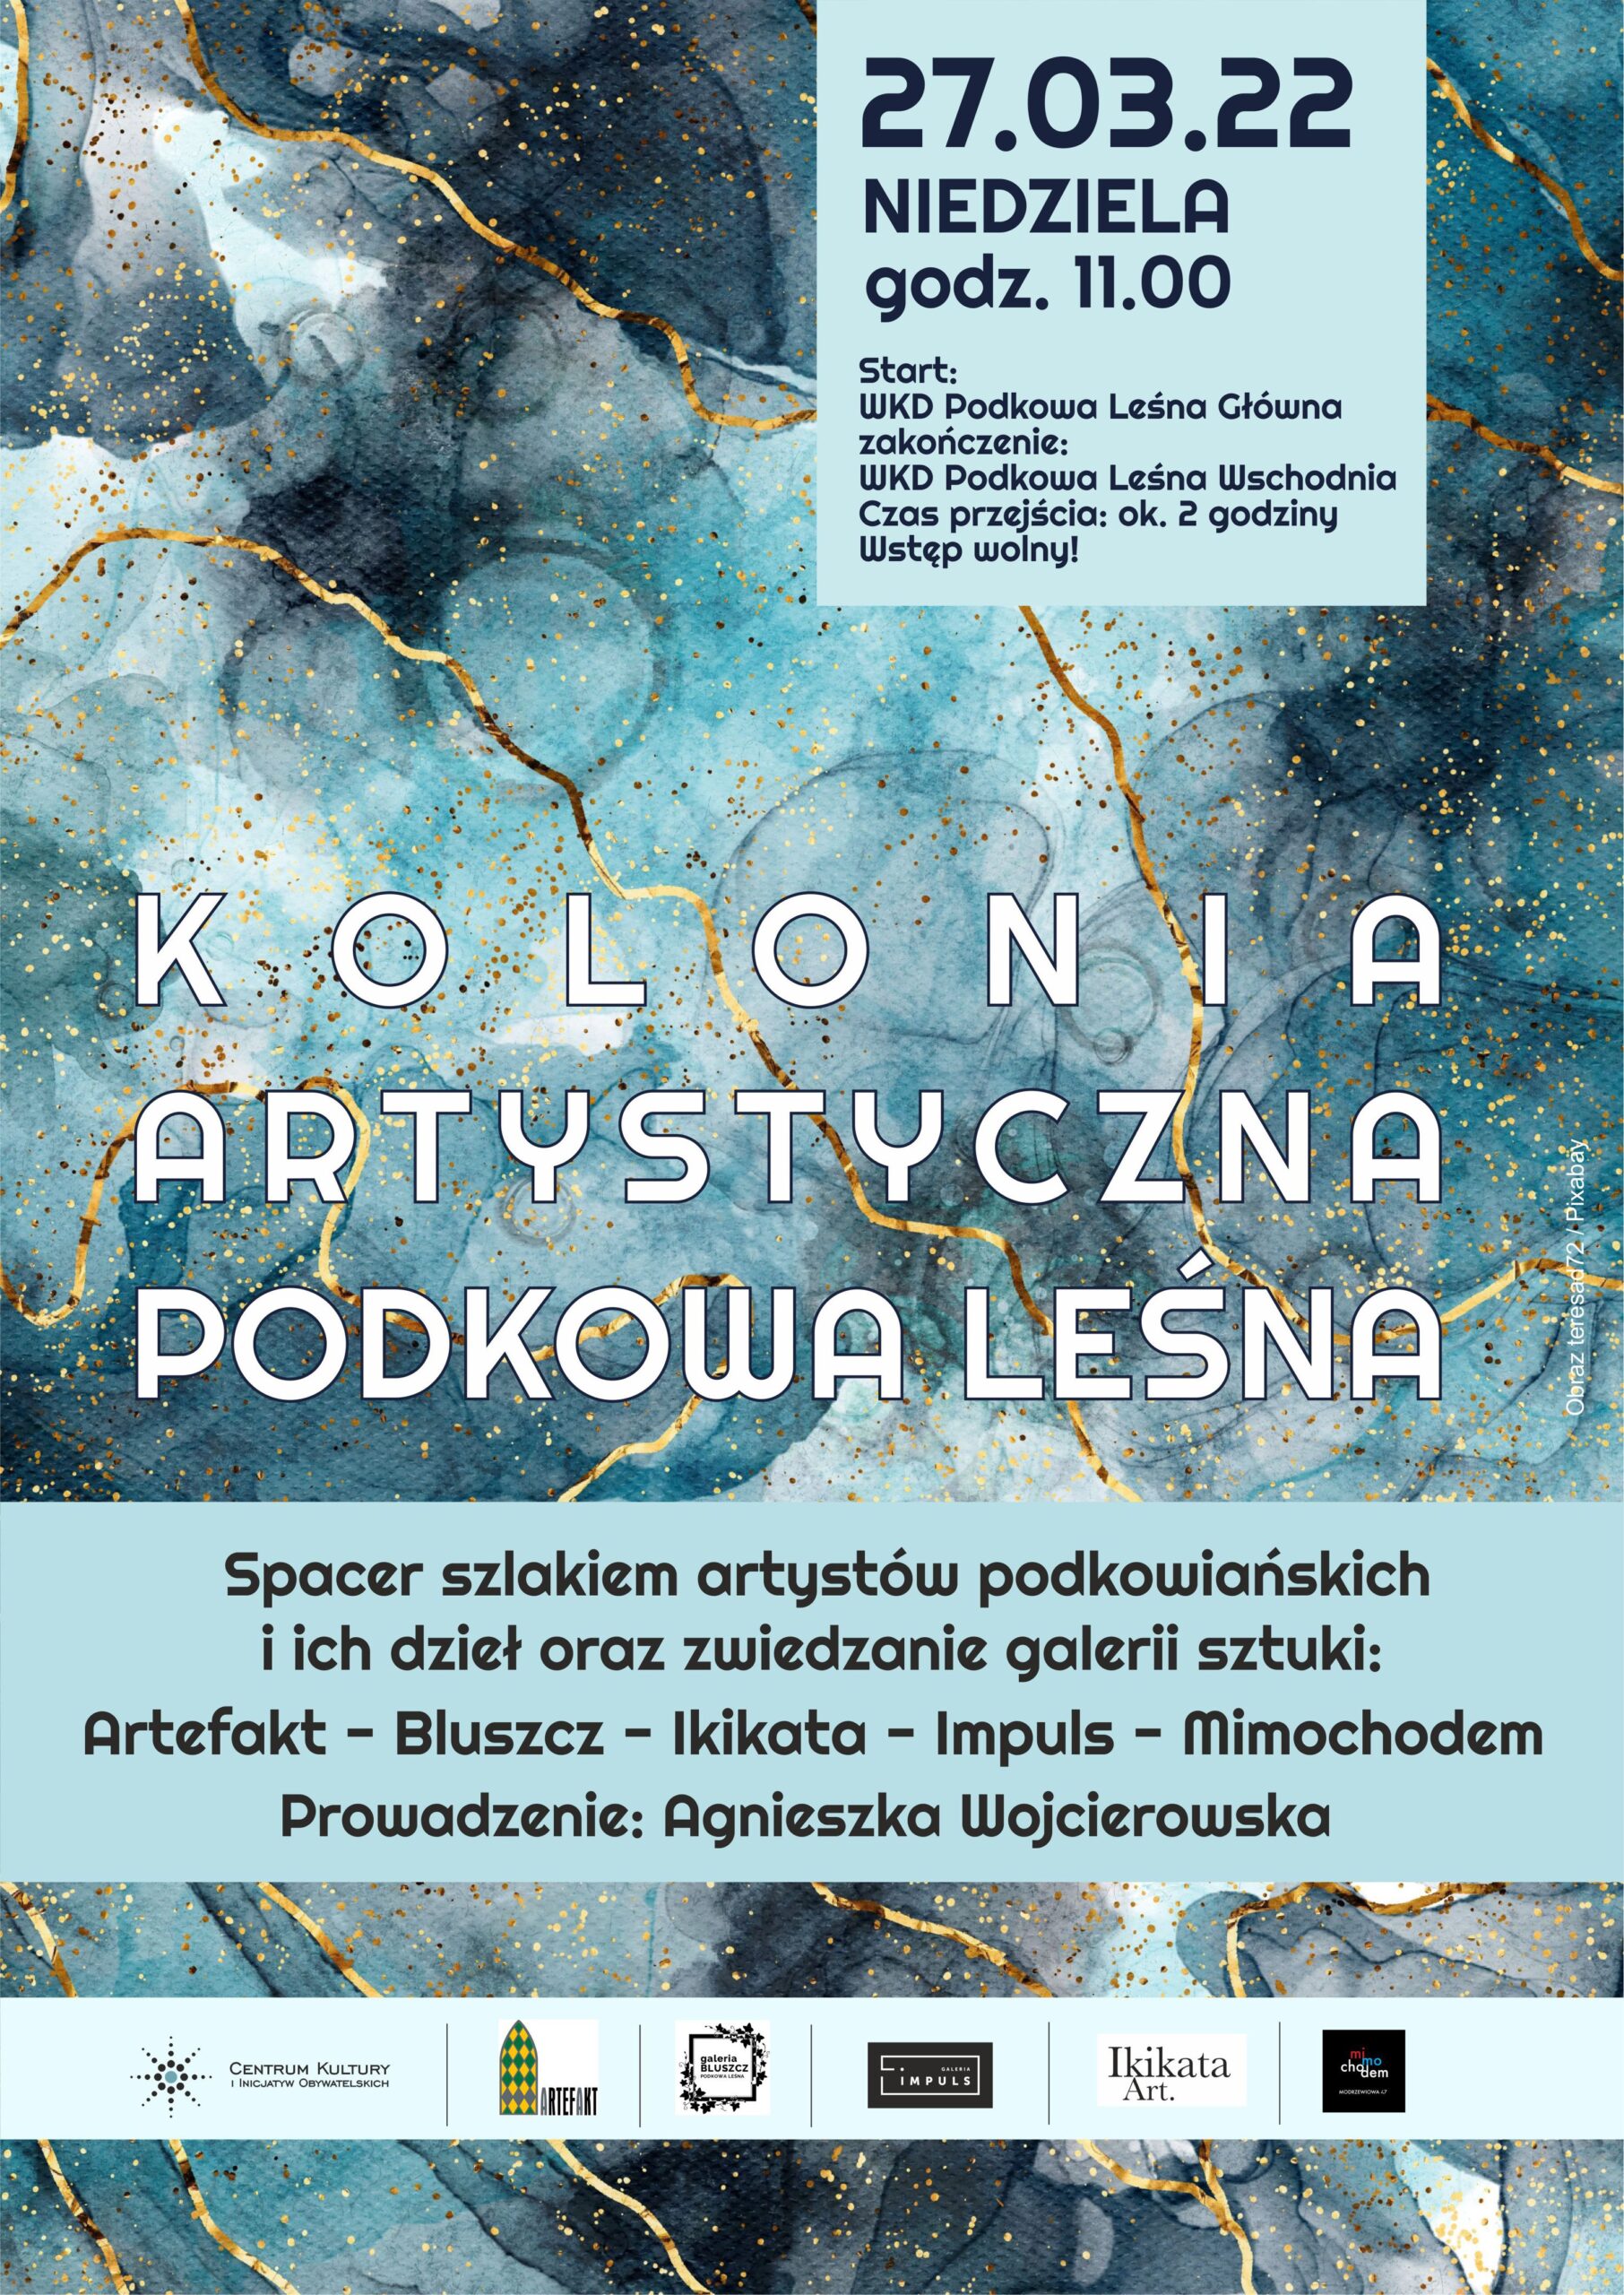 You are currently viewing Kolonia artystyczna – spacer śladami artystów